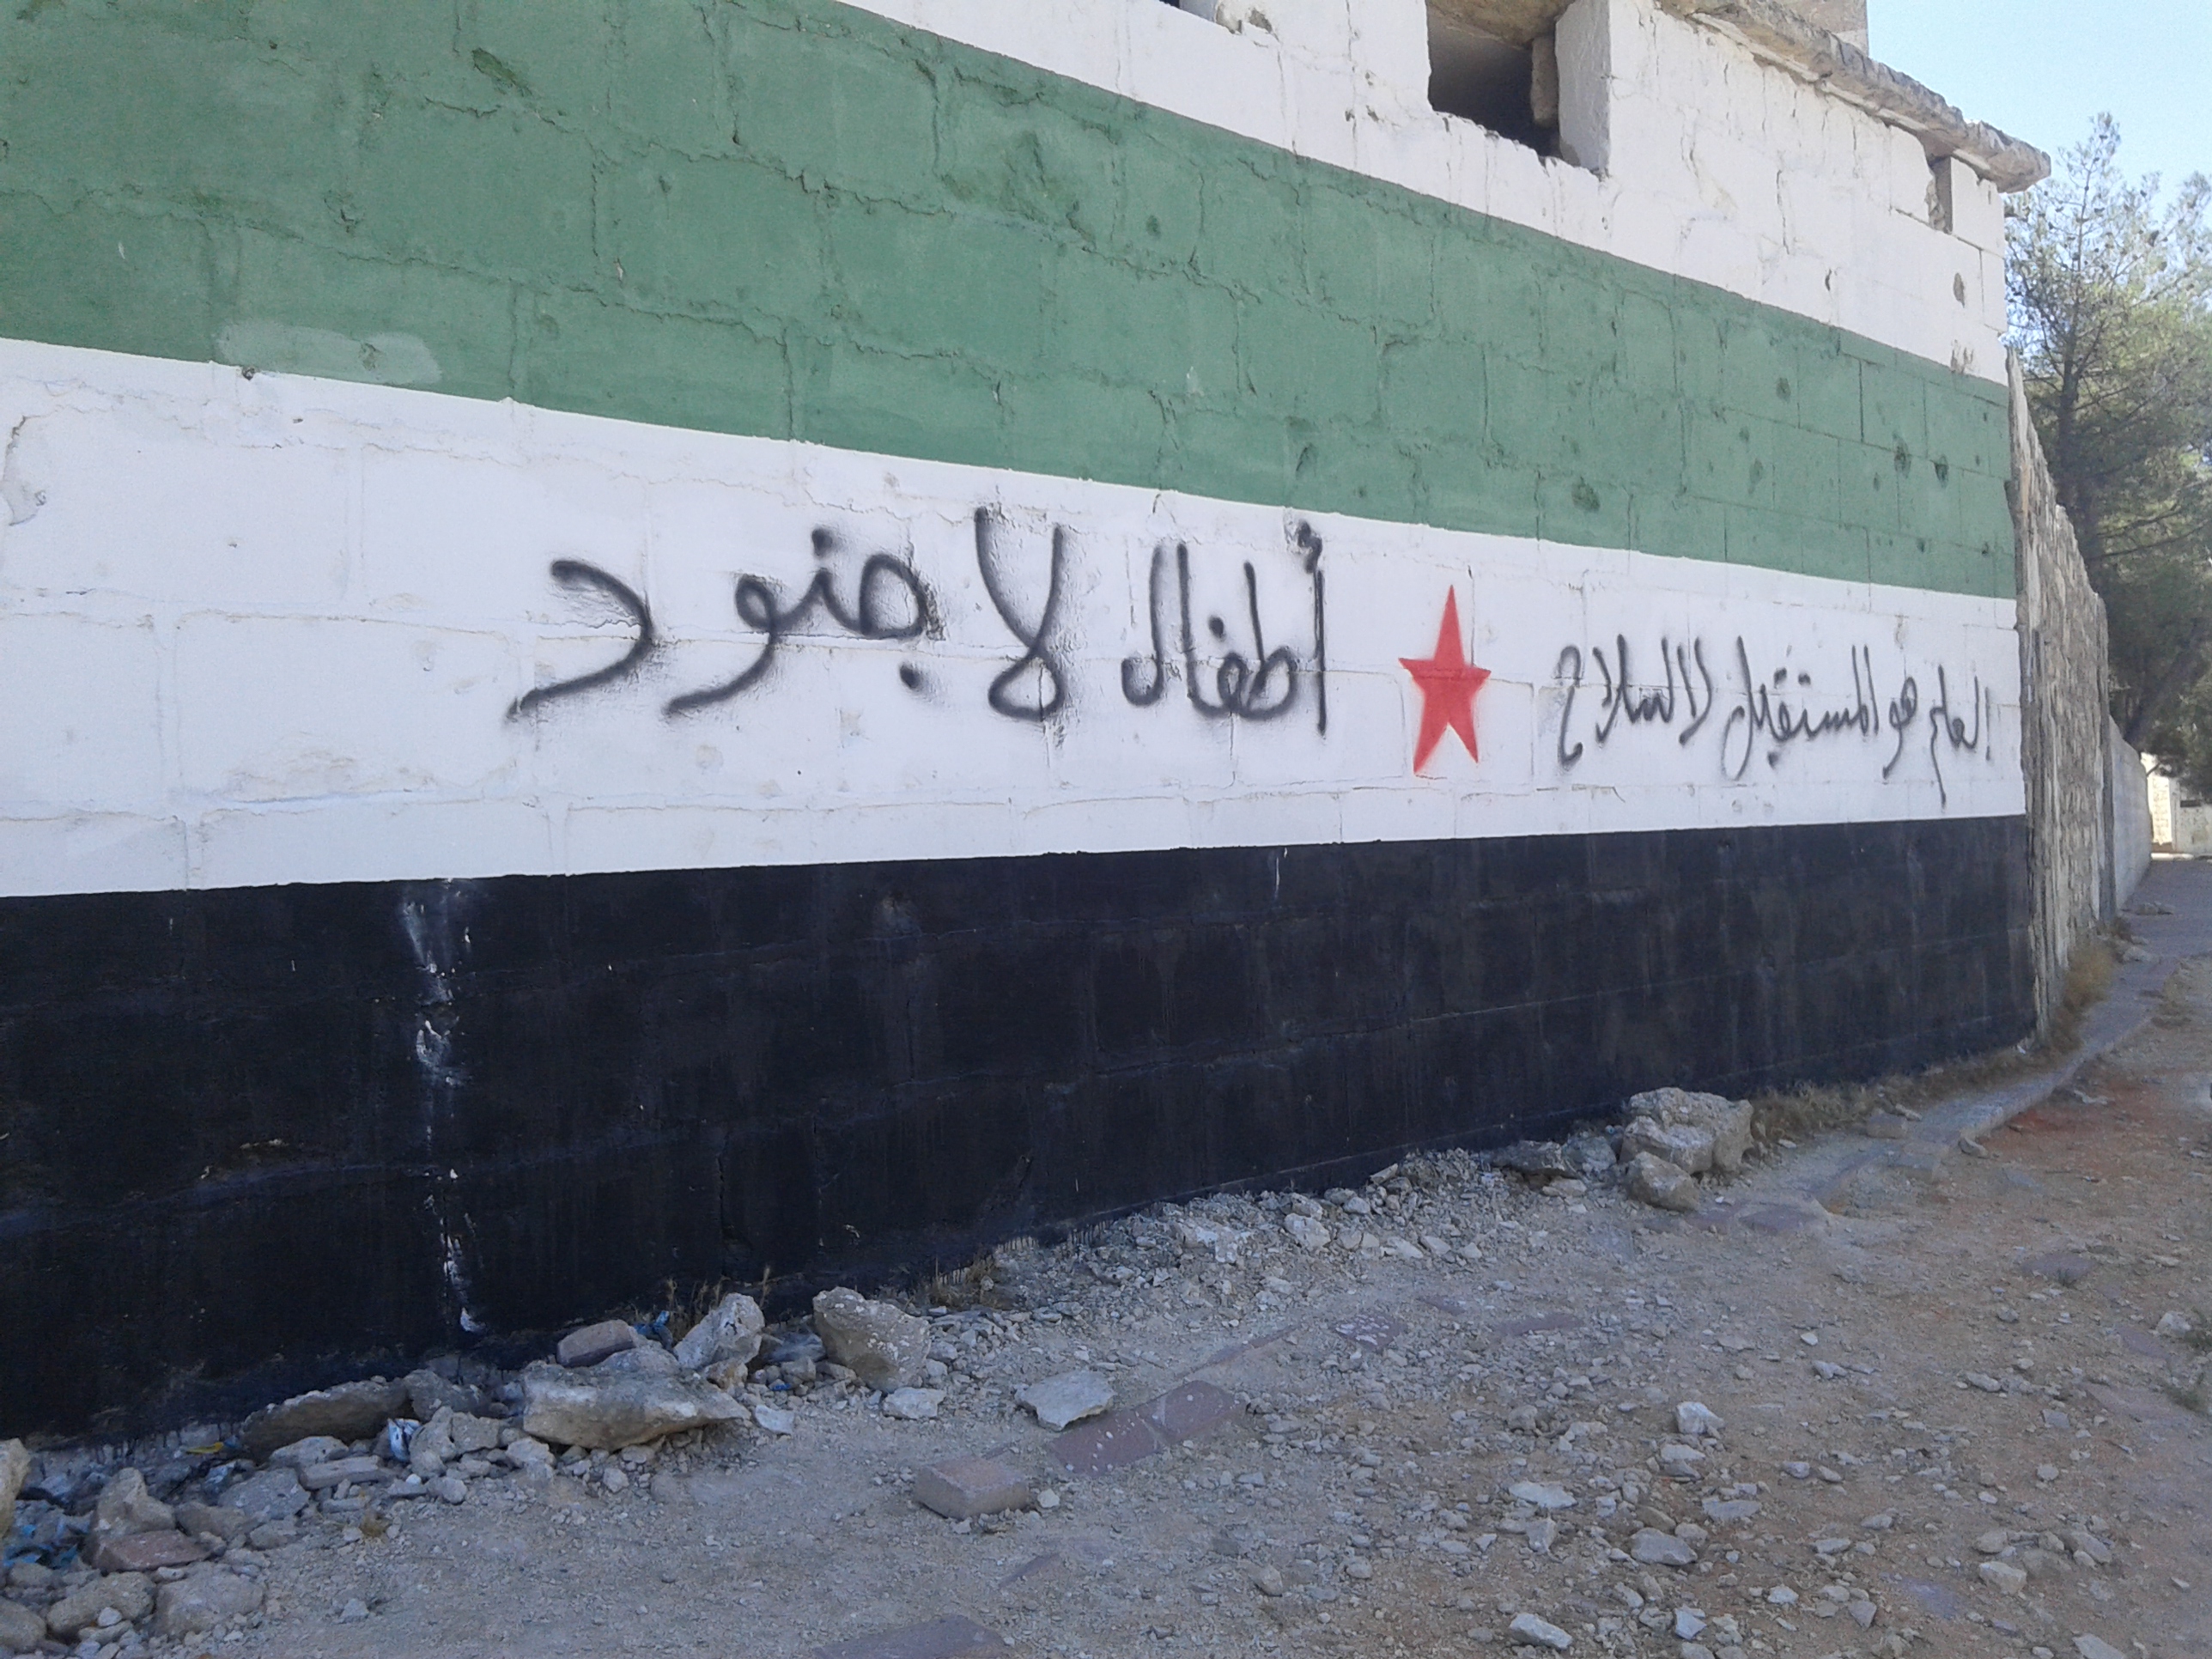 A slogan scrawled on a wall in Idlib. Photo: Marwa Hassan